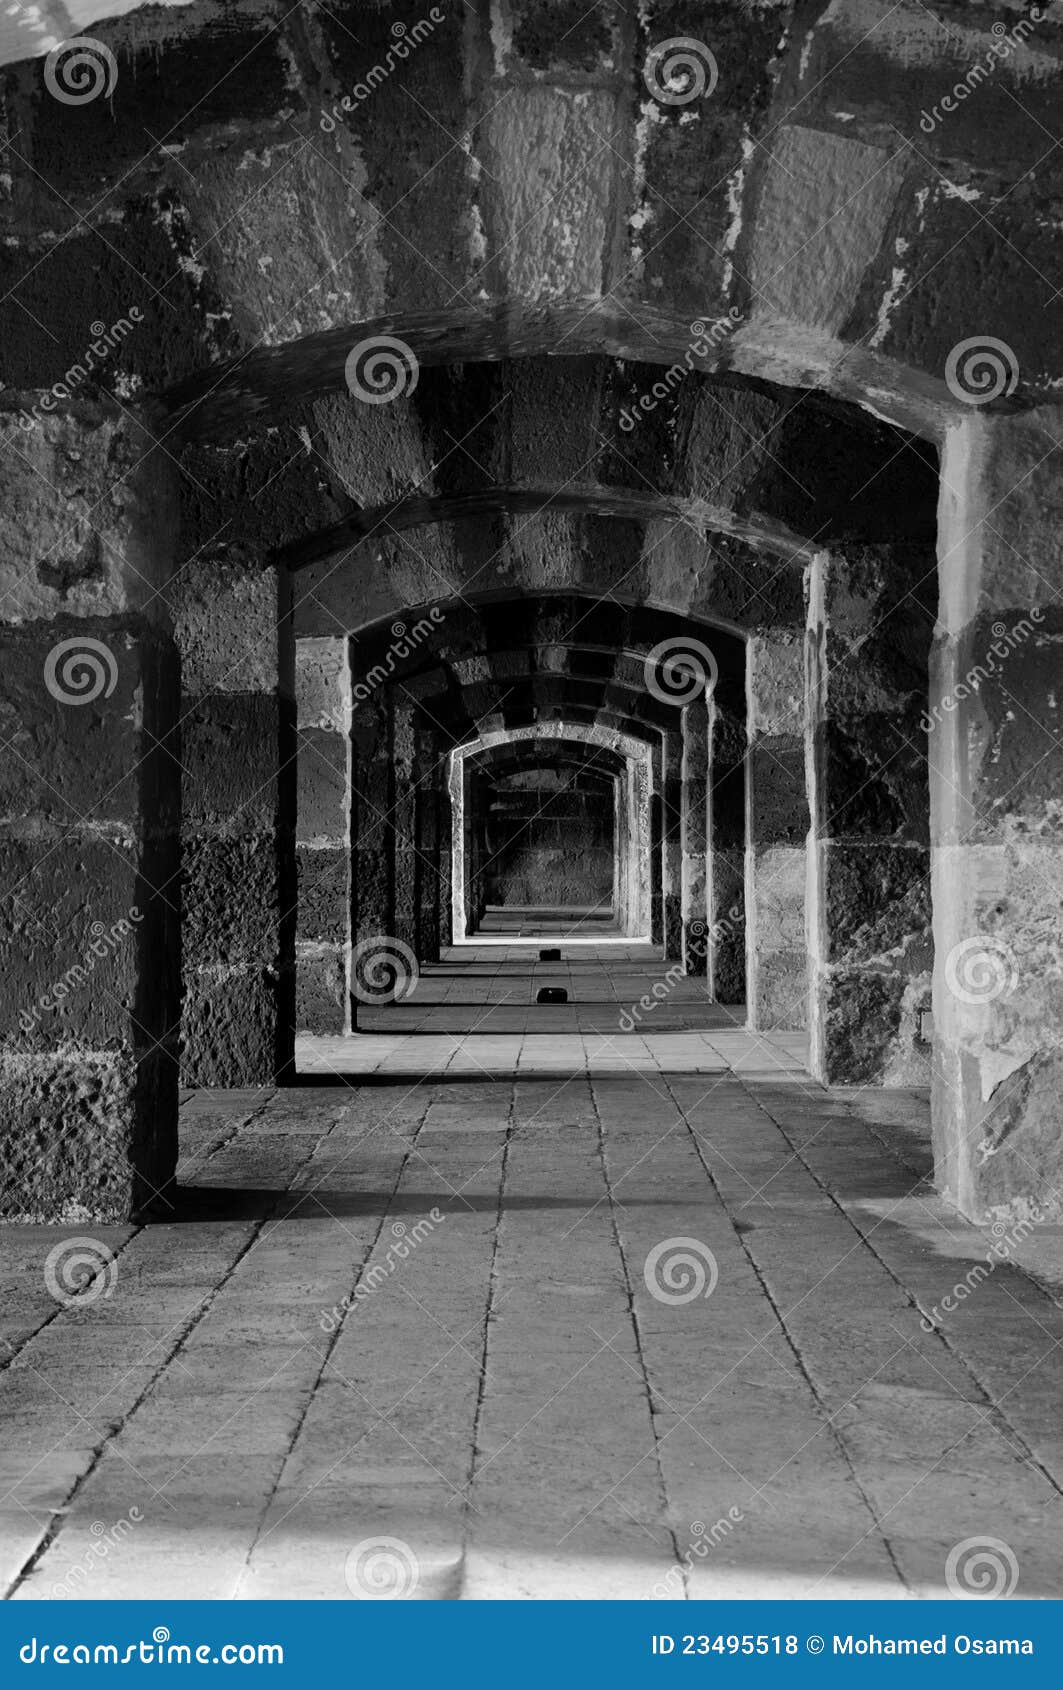 ancient castle passageway